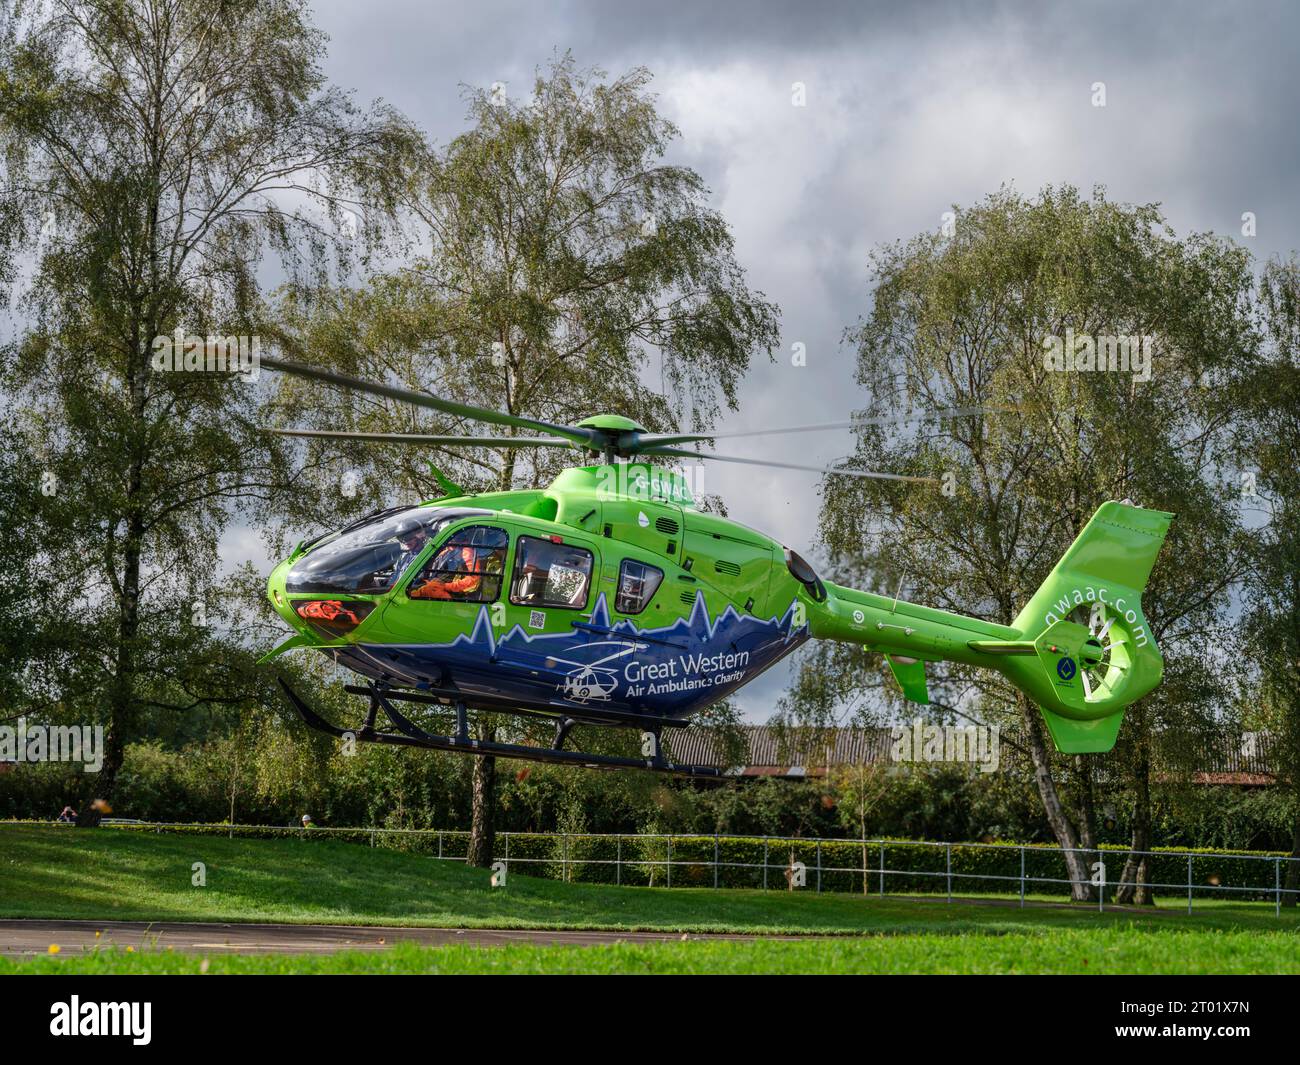 La Great Western Air Ambulance décolle de l'extérieur de l'hôpital royal de Gloucester. L'hélicoptère vert lime et bleu vif, indicatif d'appel Helimed 65, est Banque D'Images